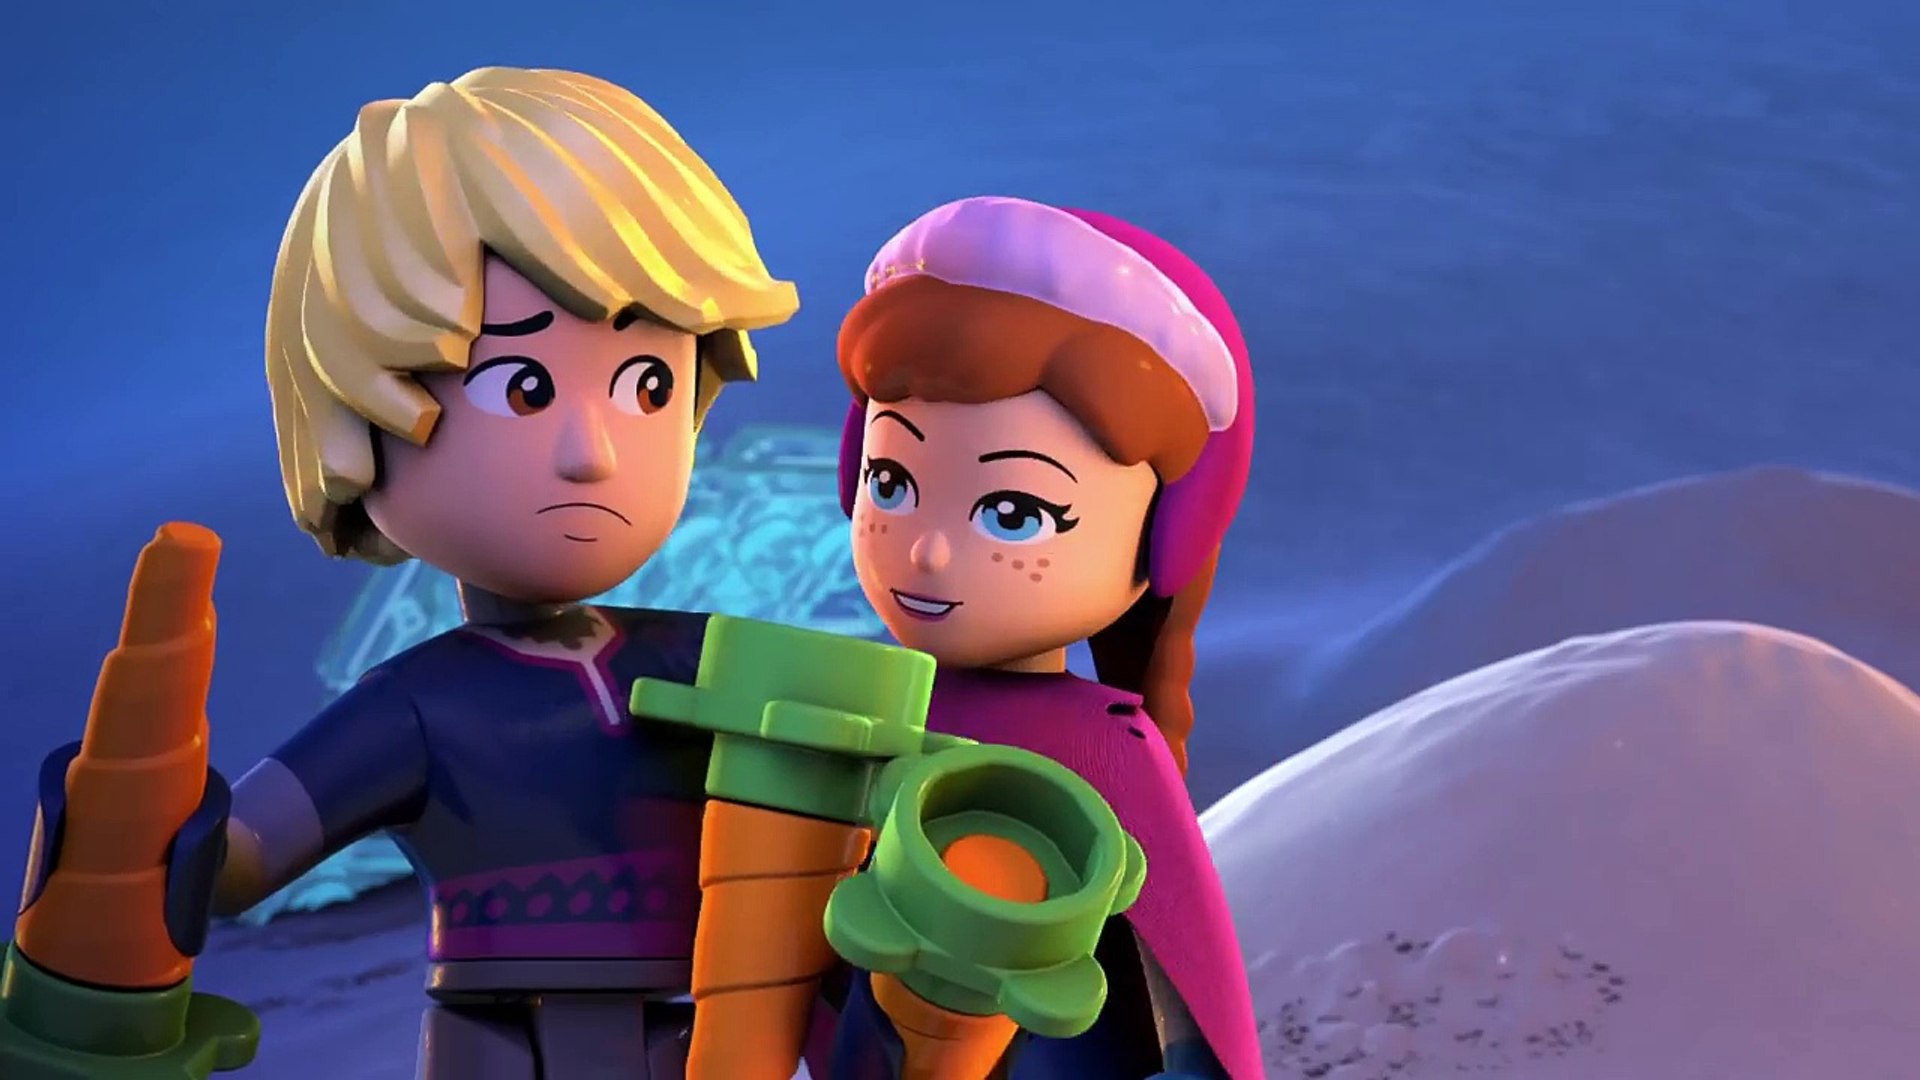 Frozen 2: em novo trailer, Elsa e Anna partem em aventura épica